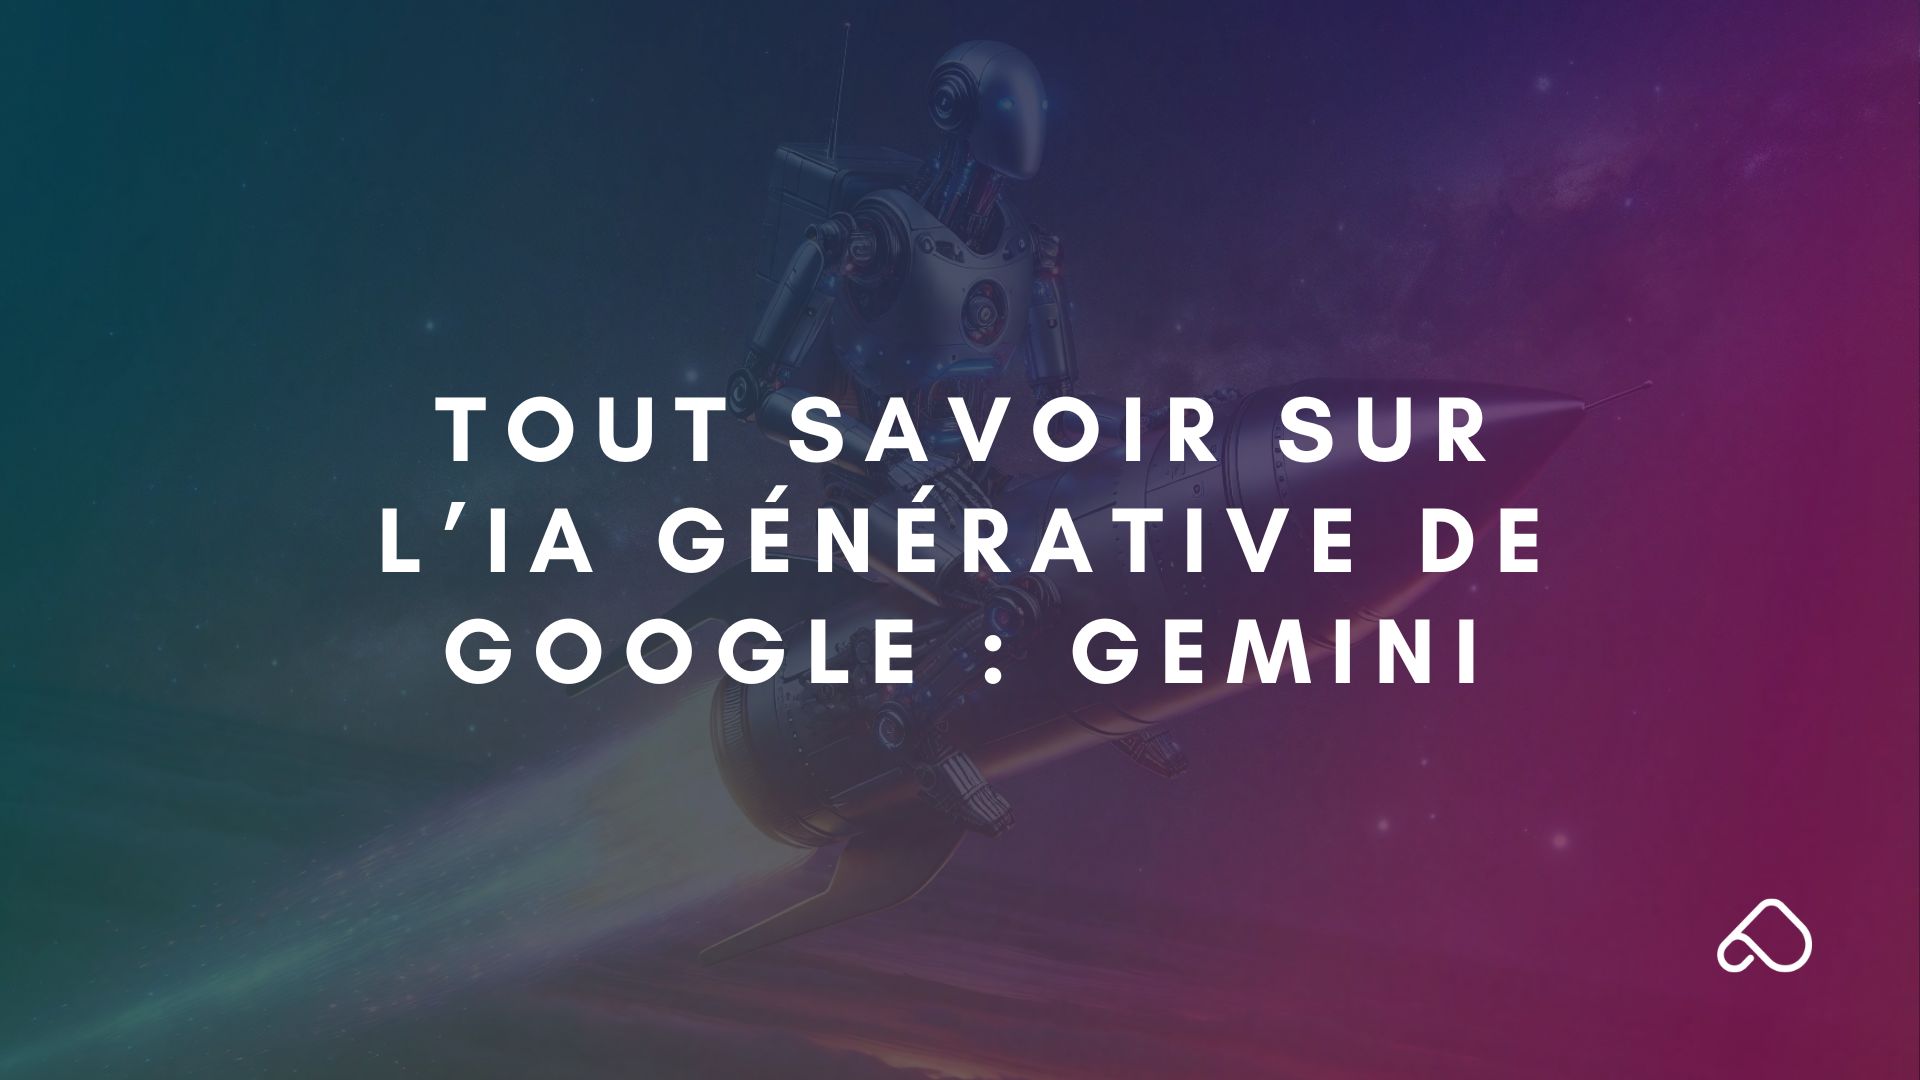 Tout savoir sur l’IA générative de Google Gemini